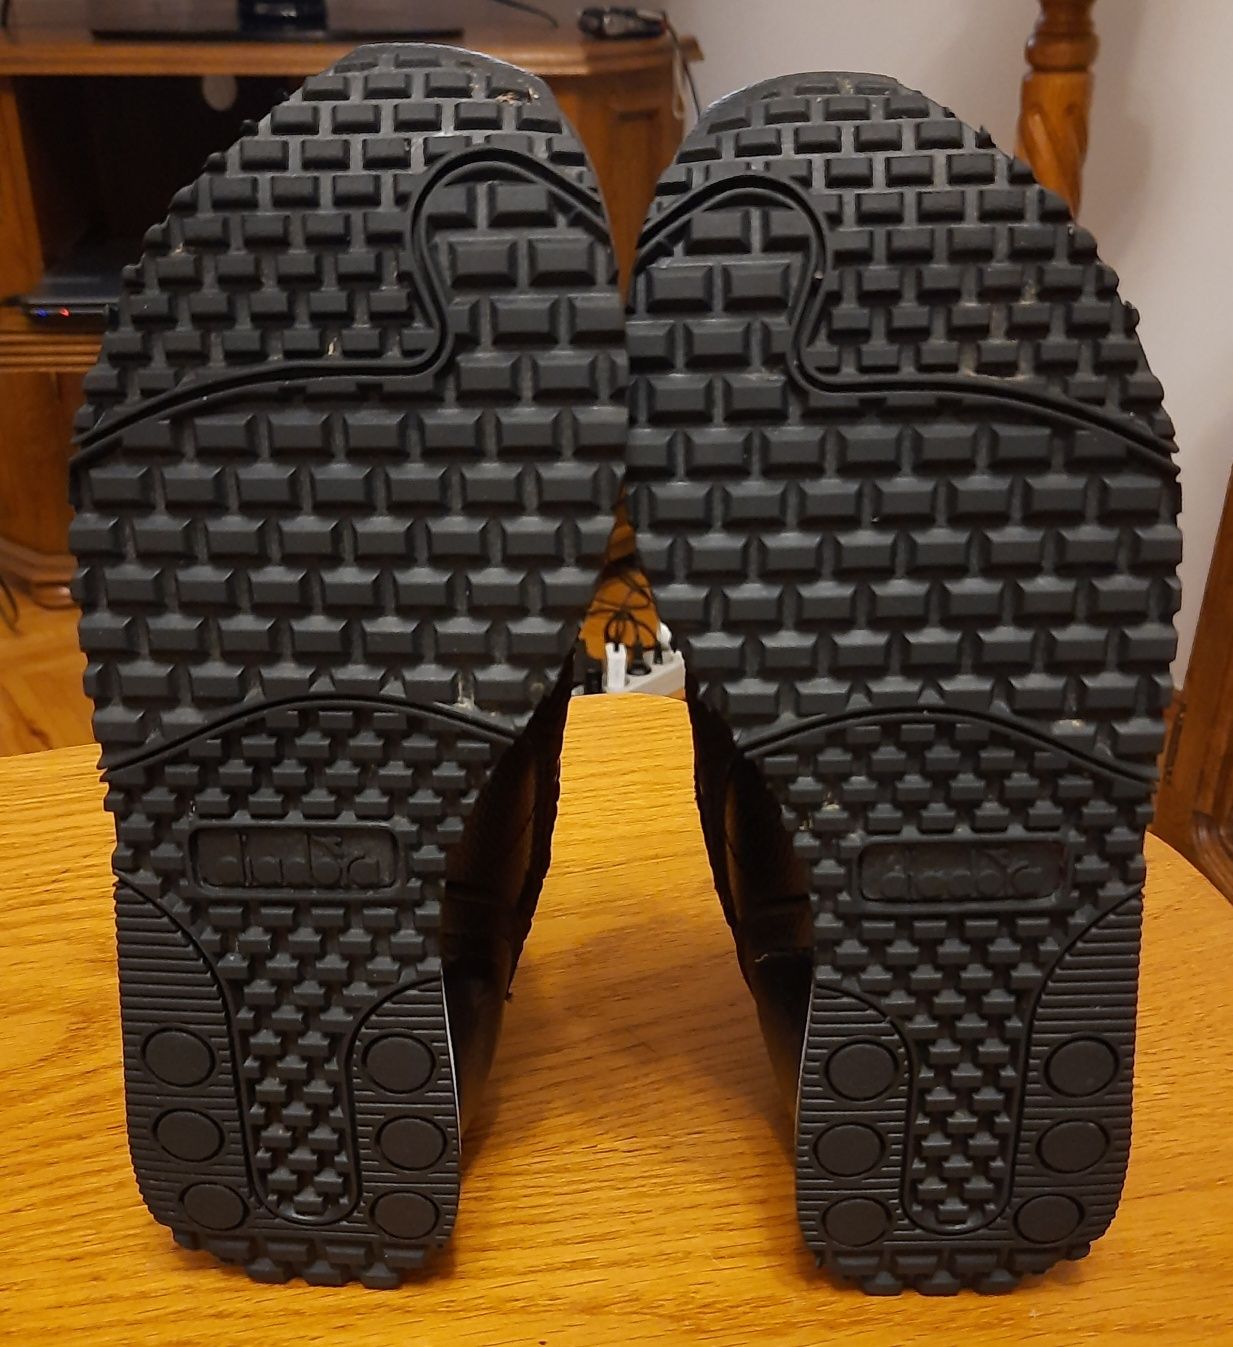 Кросівки Diadora Trade Marks розмір (38/23.5см) в ідеальному стані